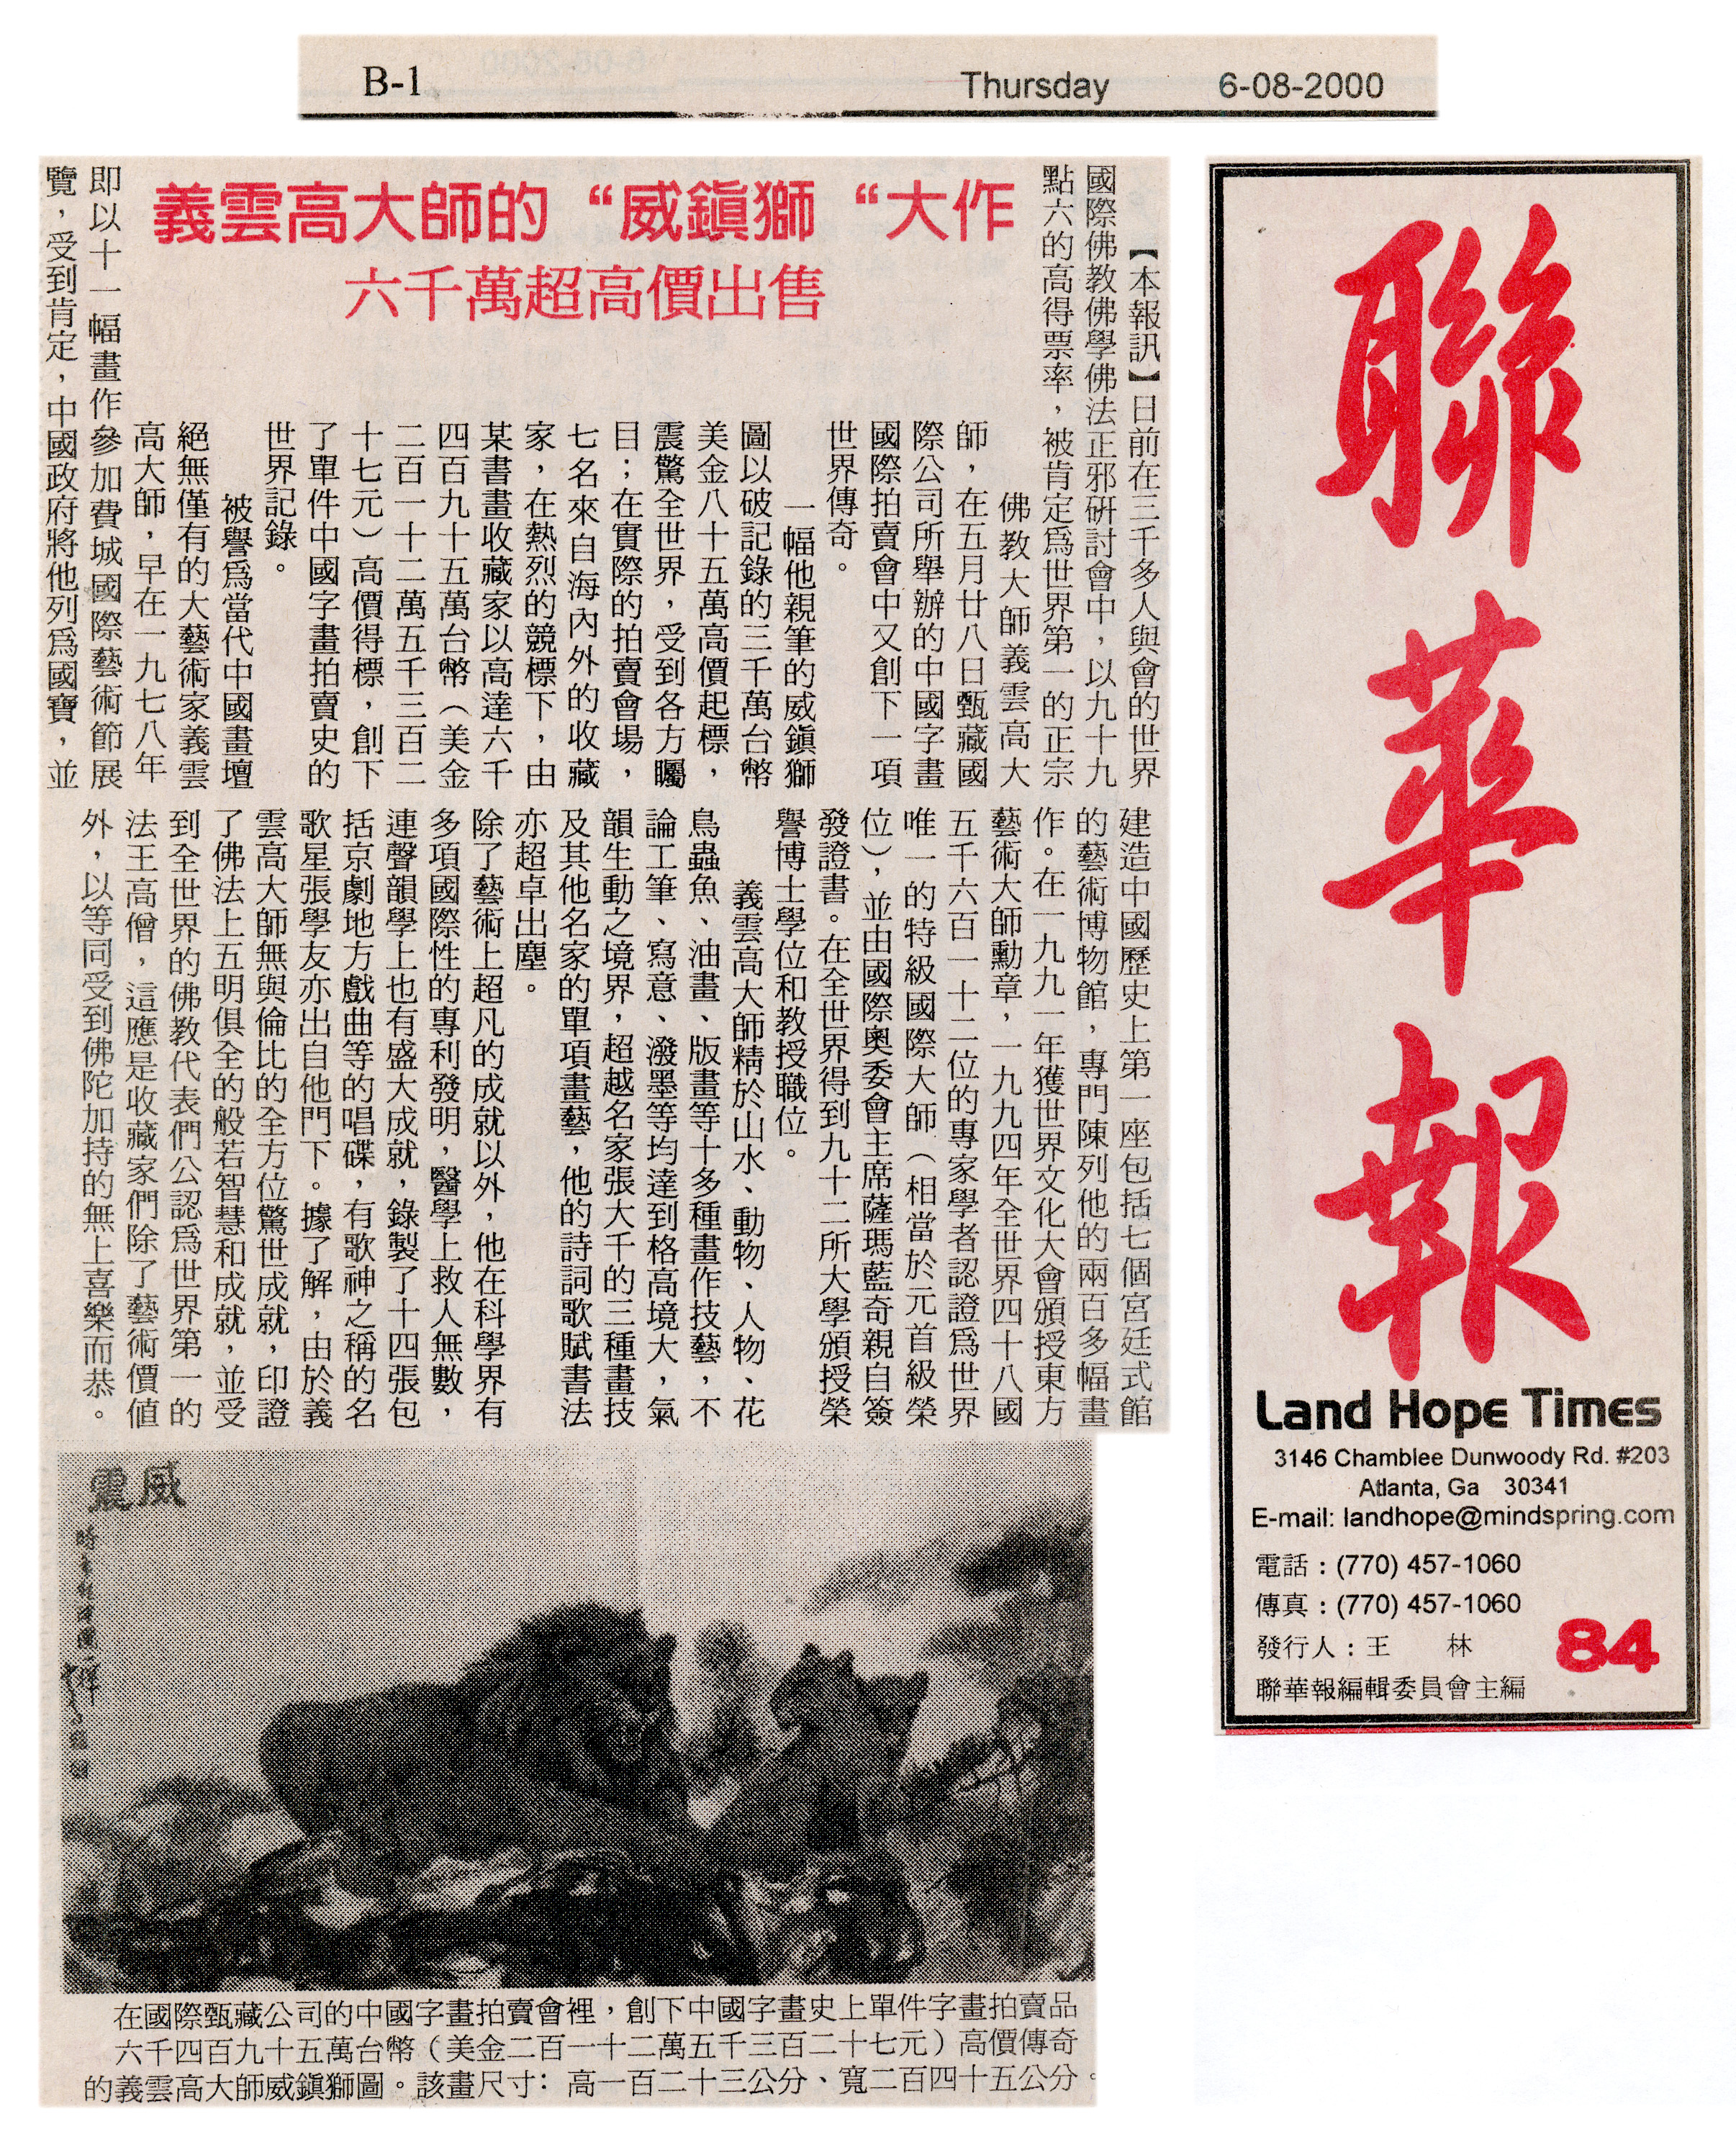 義雲高大師的「威震獅」大作 六千萬超高價出售 (聯華報 2000年6月8日 B-1)